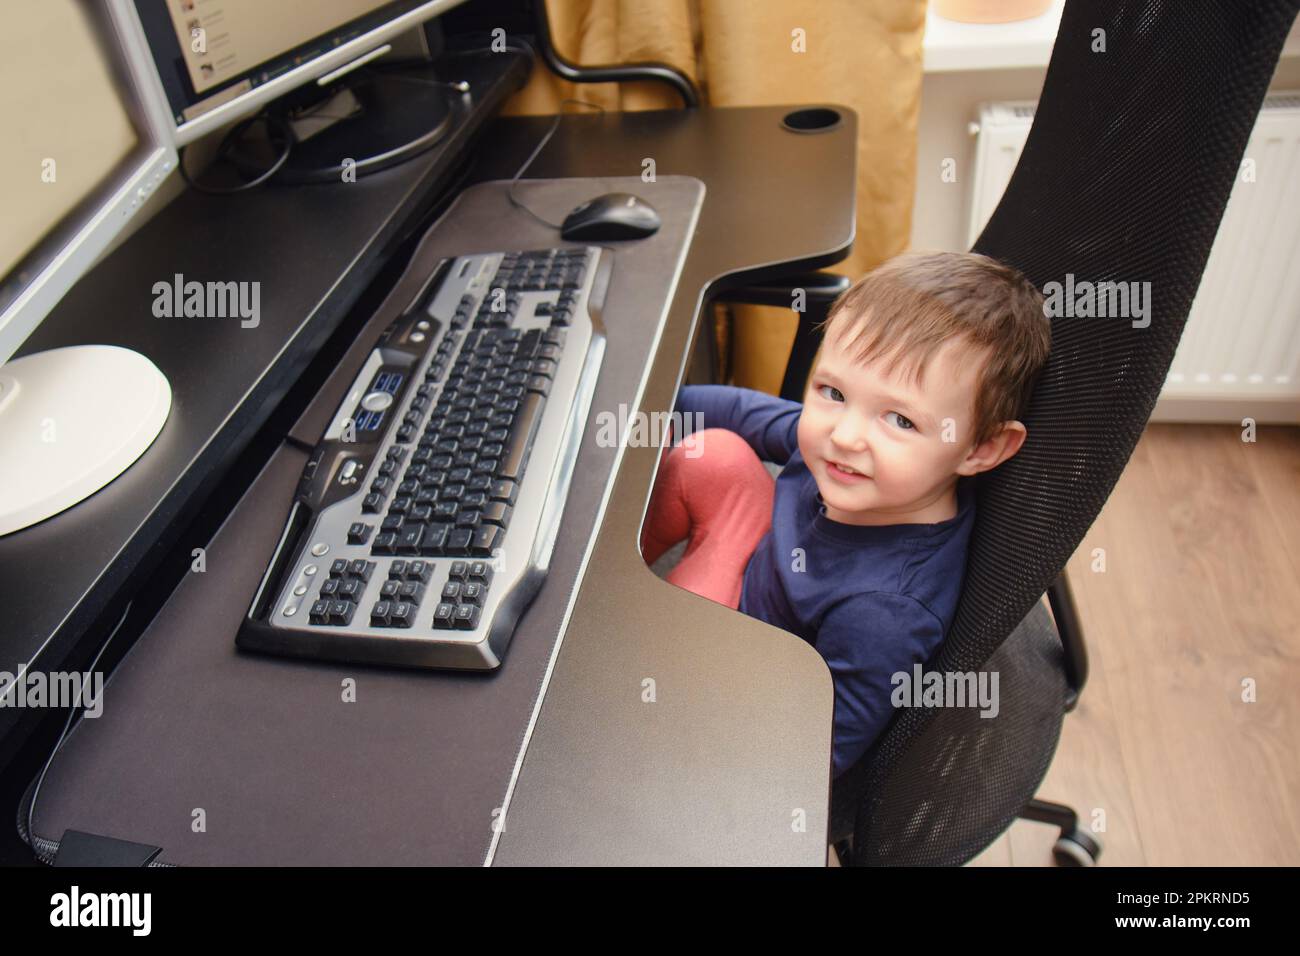 Bébé travaille sur un ordinateur équipé d'un clavier et d'une souris.  L'enfant heureux s'assoit sur une chaise d'ordinateur à côté des moniteurs  de PC. Enfant âgé d'un an neuf mois Photo Stock -